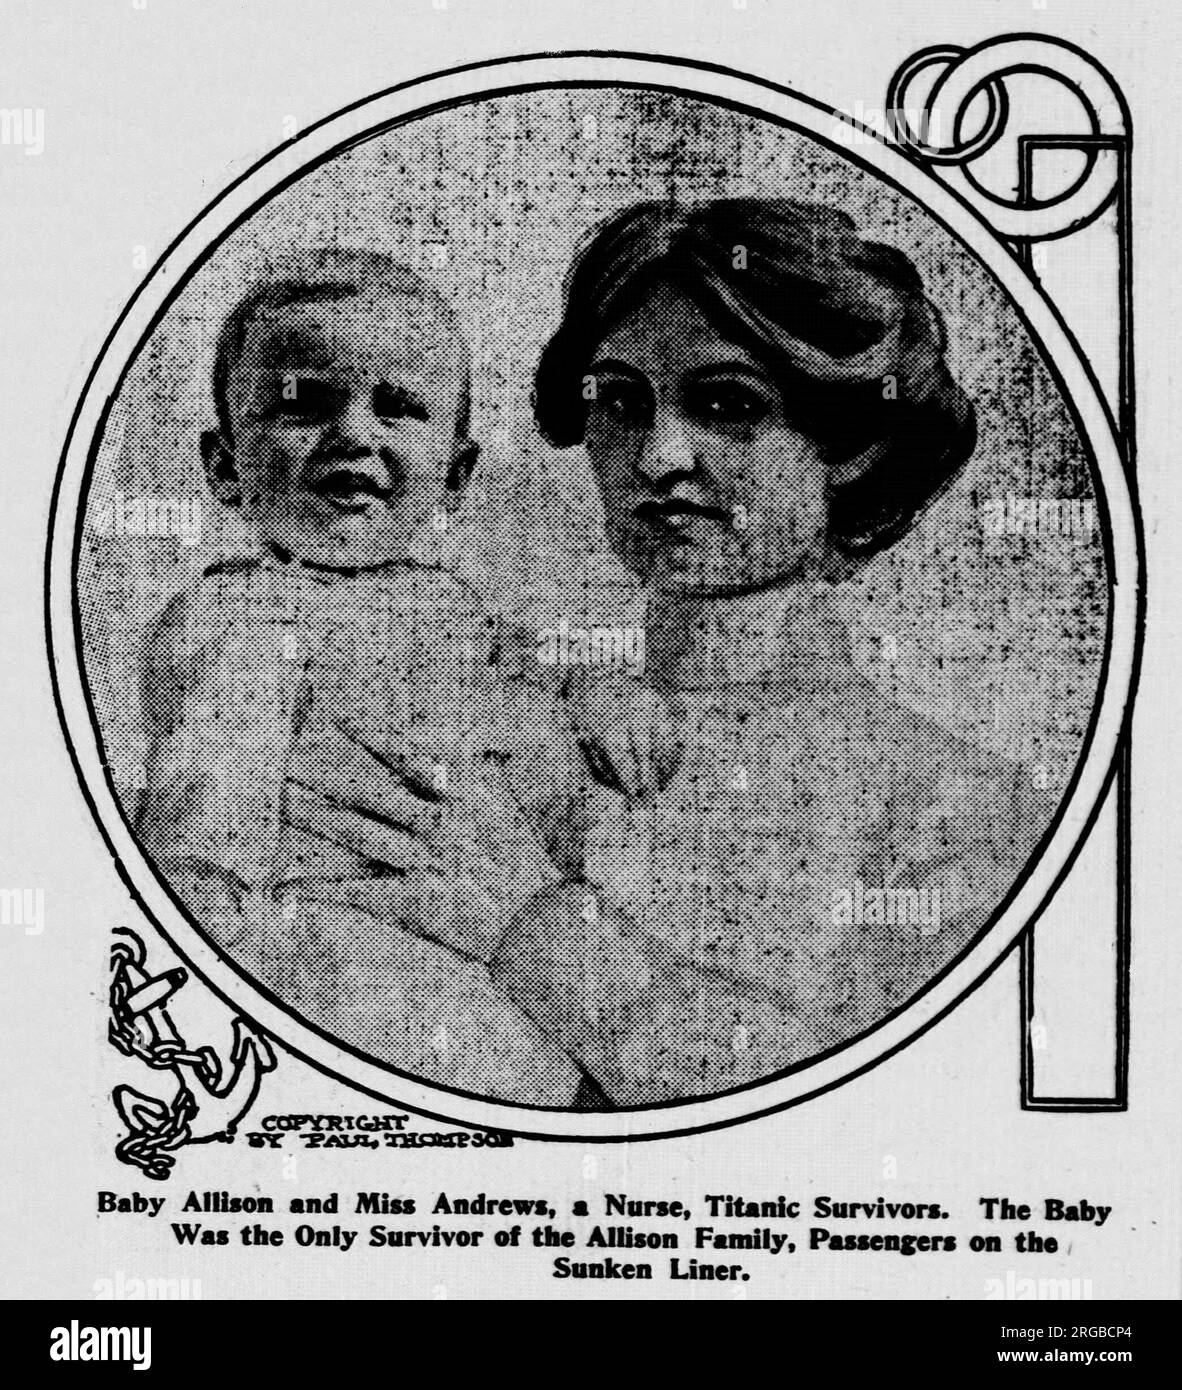 Baby Hudson Trevor Allison (1911-1929) und Alice Catherine Cleaver, seine Krankenschwester - Titanic Survivors. Das Baby war das einzige Überlebende der Allison-Familie (alle reisten in der 1. Klasse), nachdem das Luxusschiff gesunken war. Stockfoto